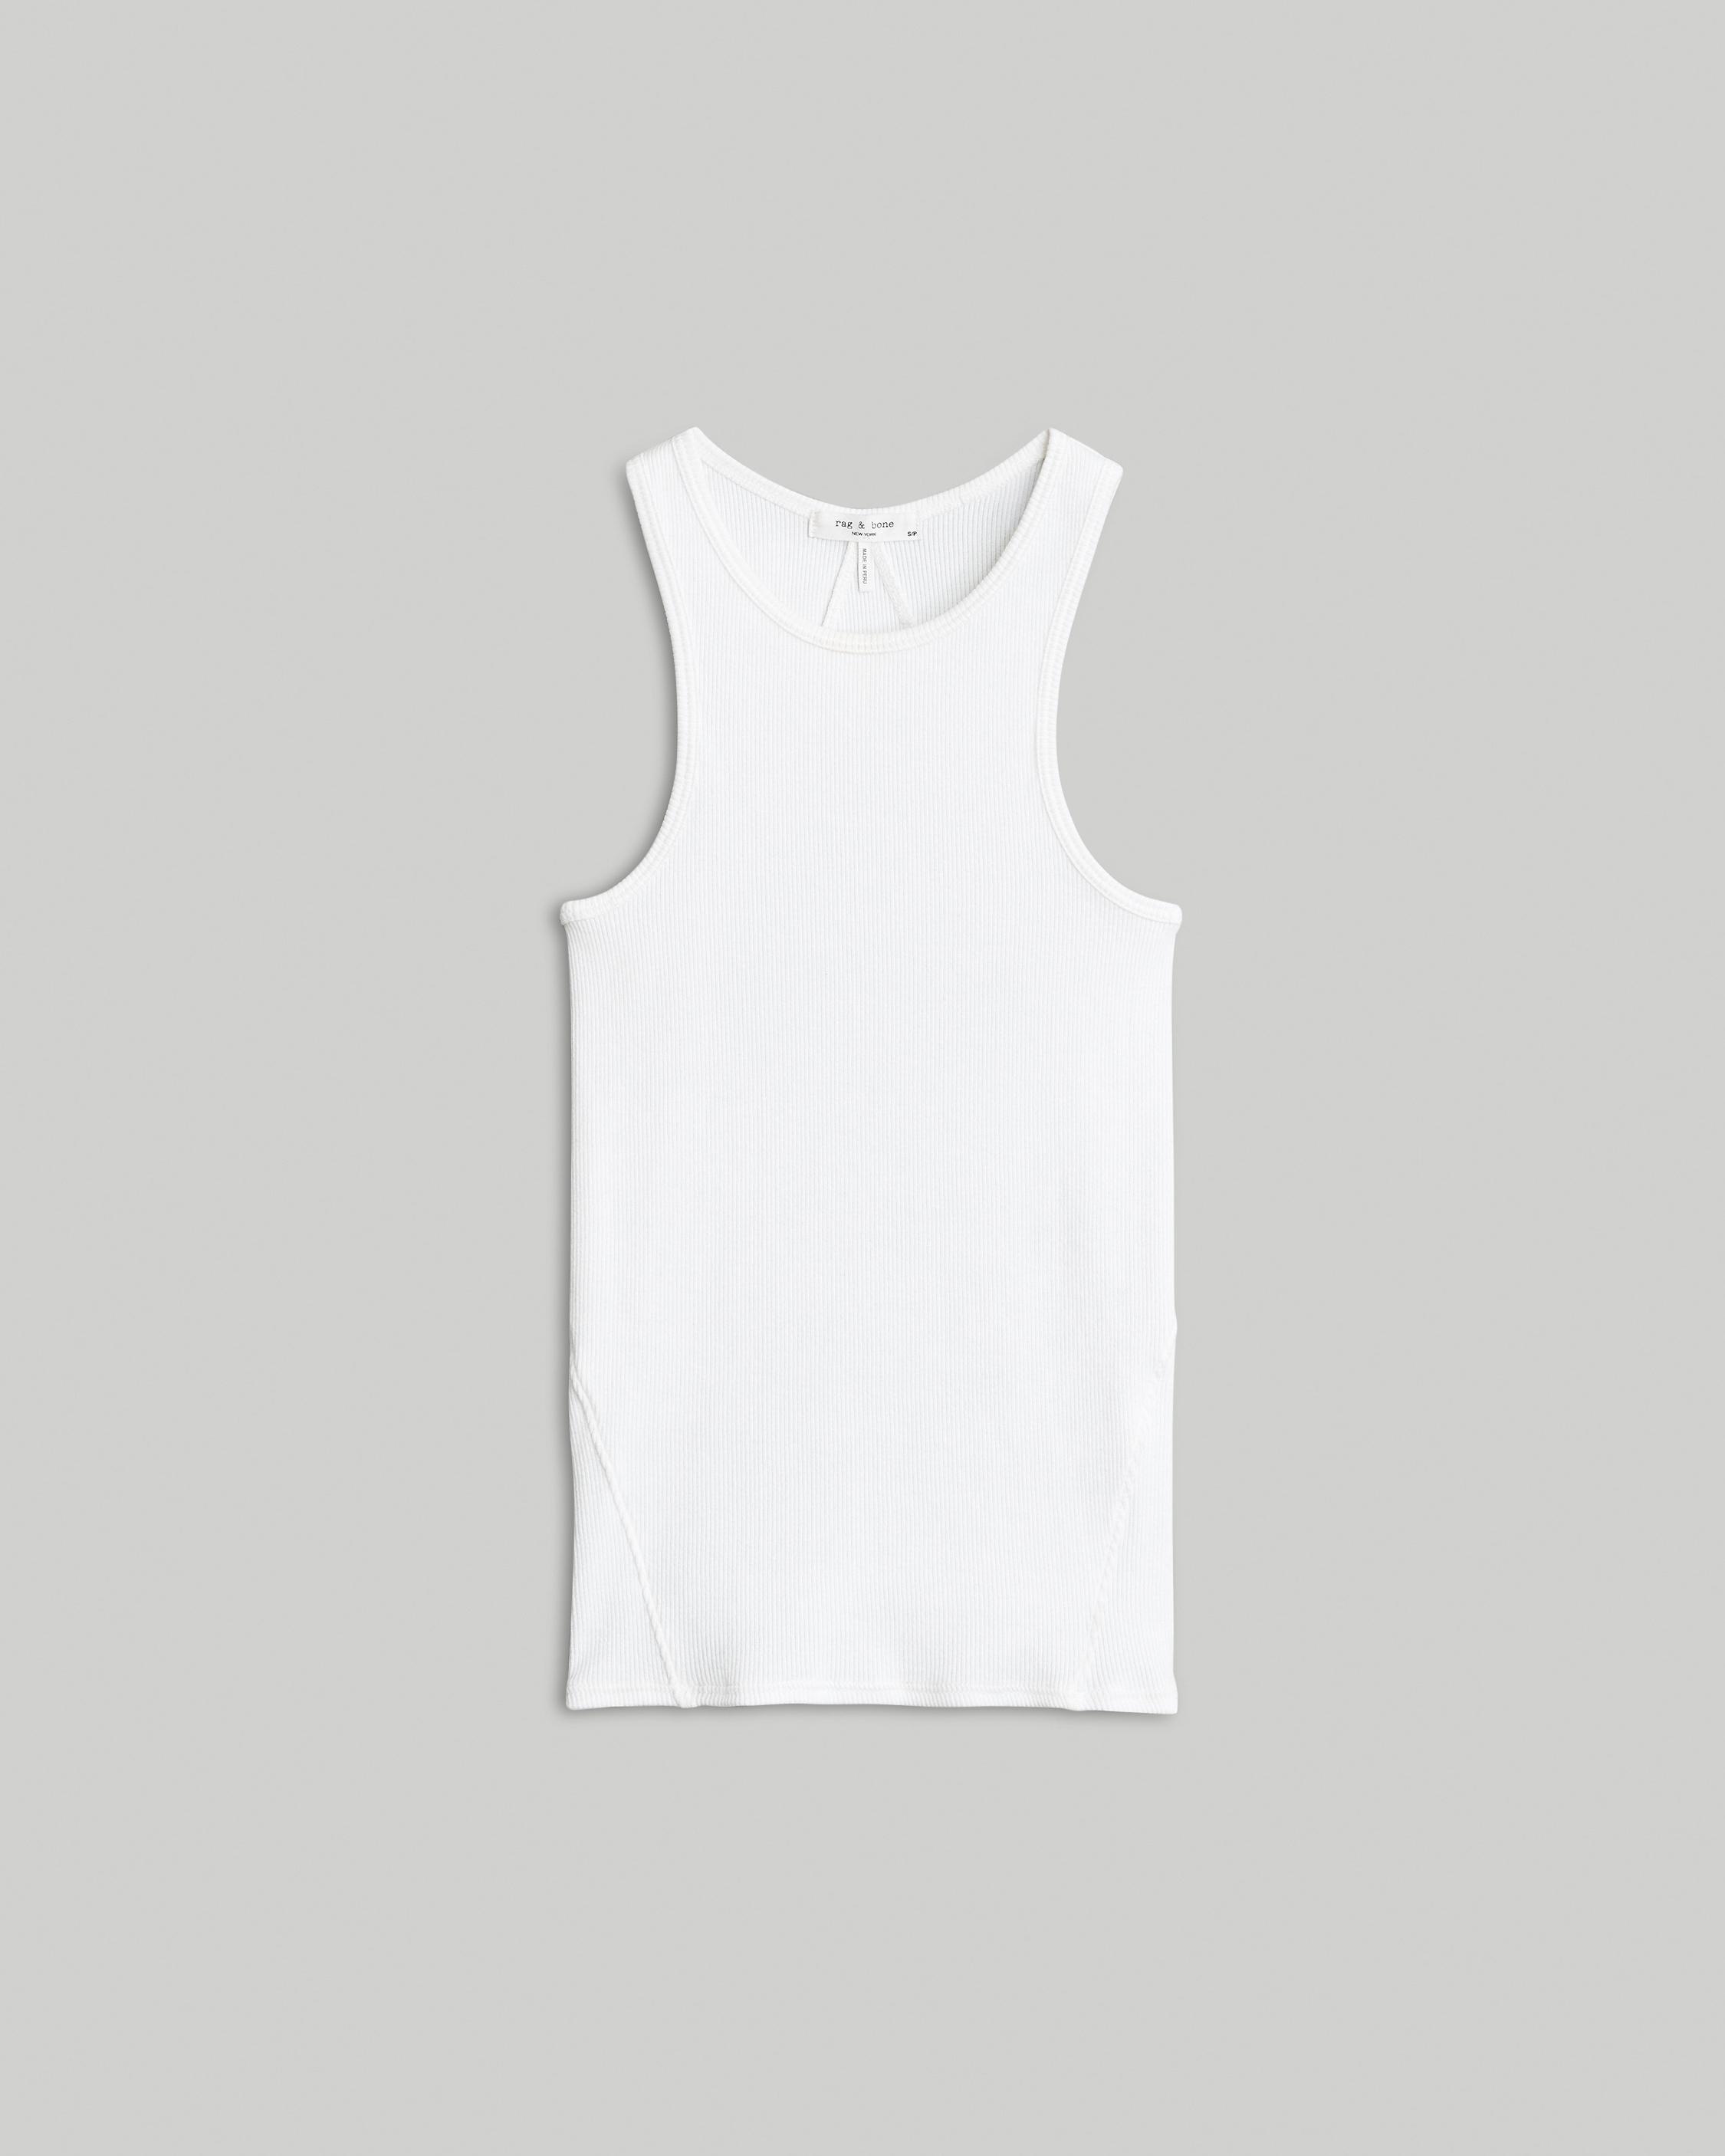 The Essential Rib Tank
Rib Cotton T-Shirt - 1